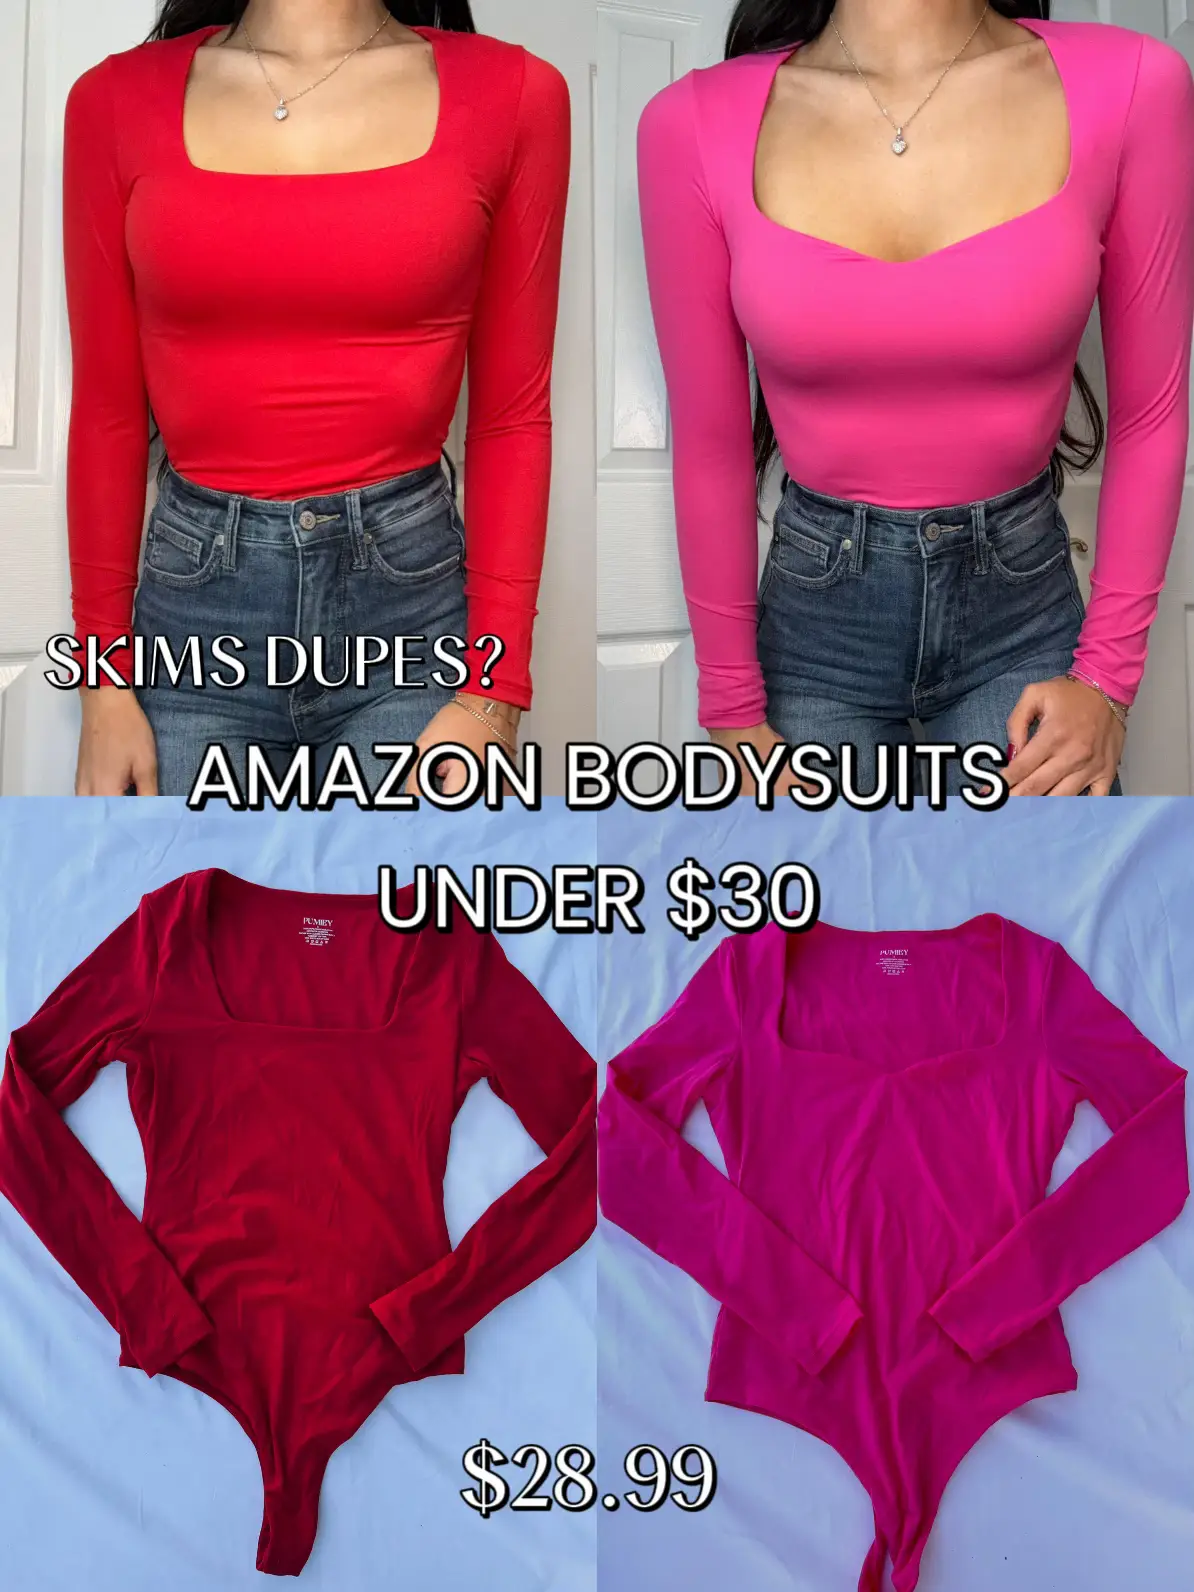 BASICS, are these skims bodysuit dupes worth it?!?!